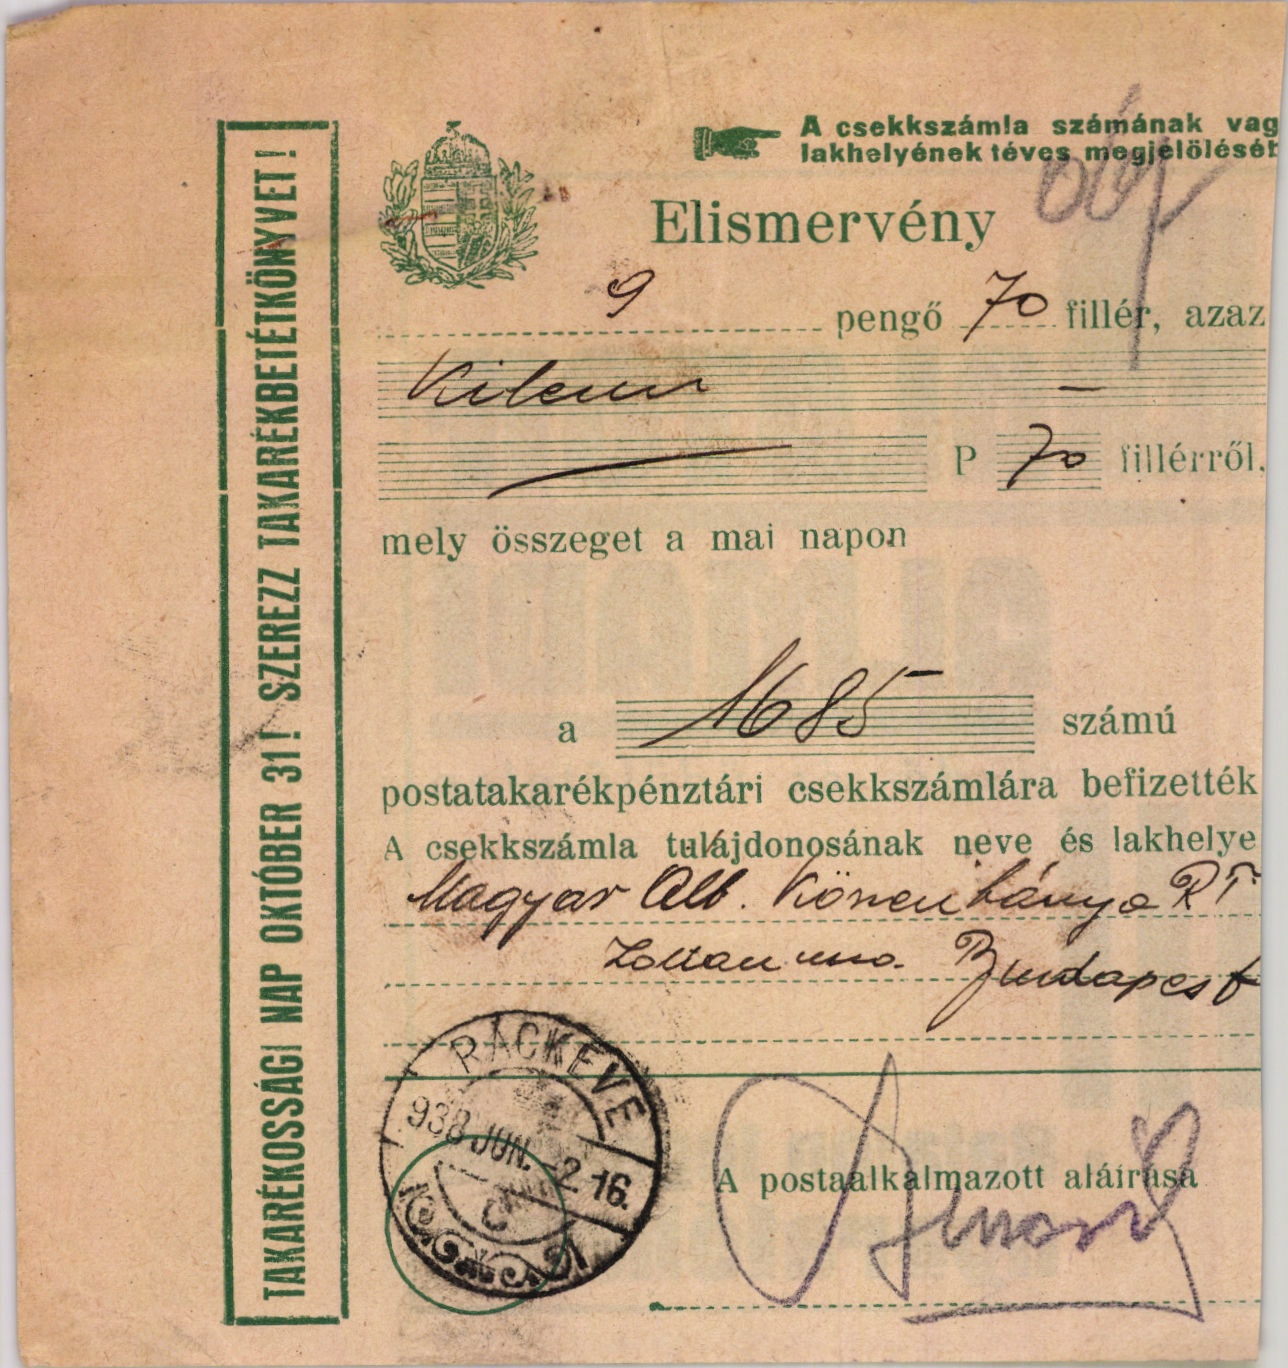 Magyar Általános Kőszénbánya Részvénytársulat (Magyar Kereskedelmi és Vendéglátóipari Múzeum CC BY-NC-SA)